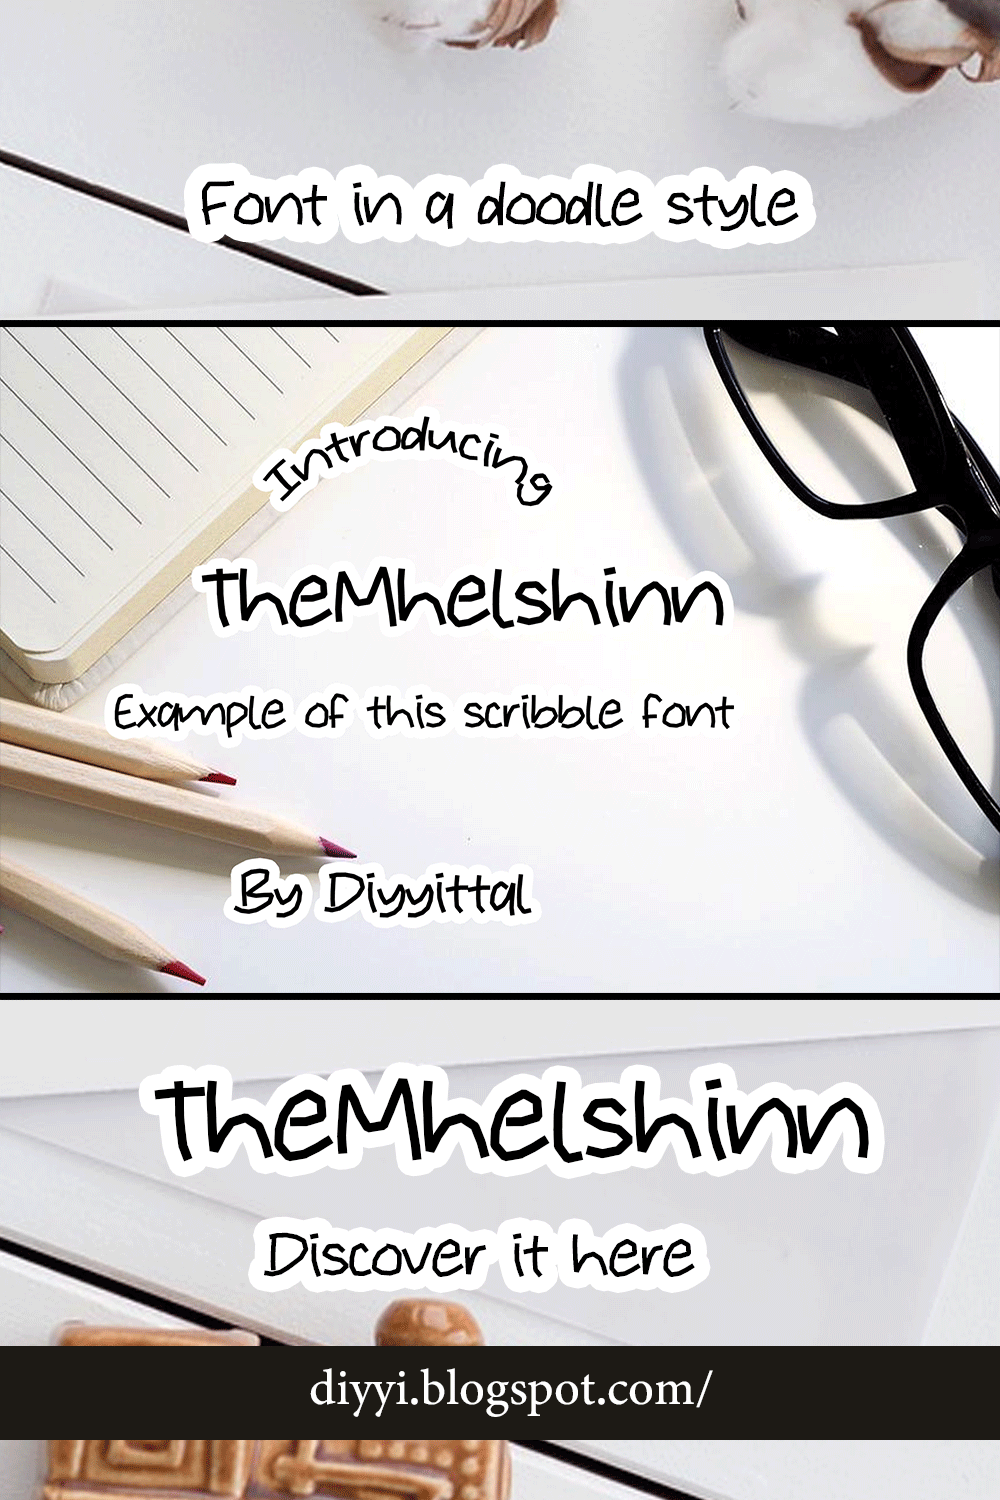 TheMhelshinn